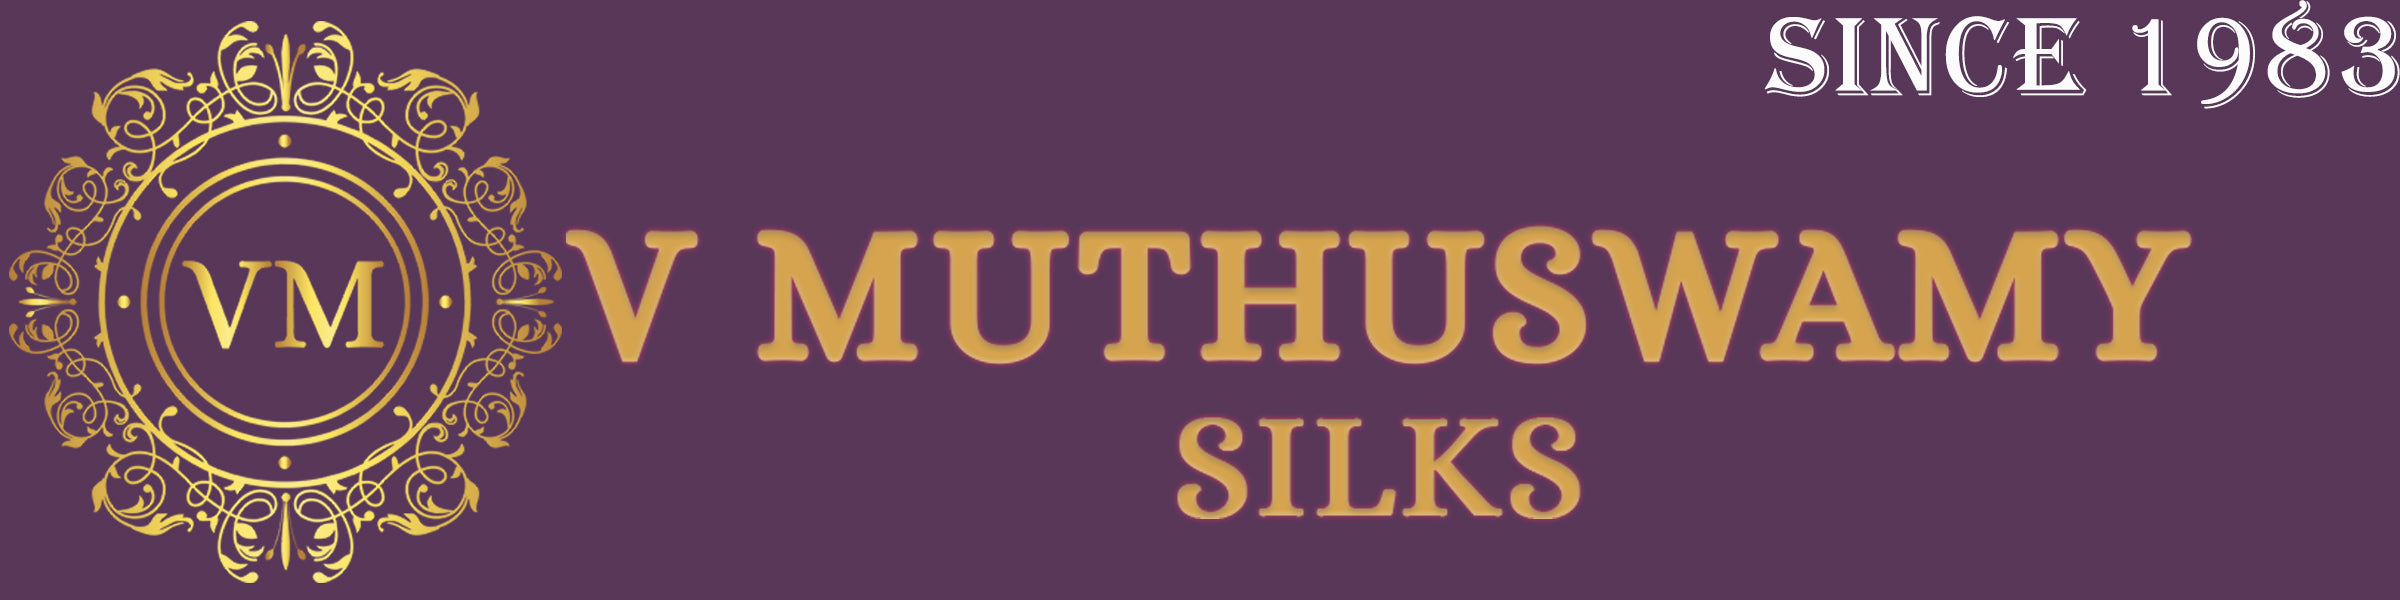 V Muthuswamy Silks